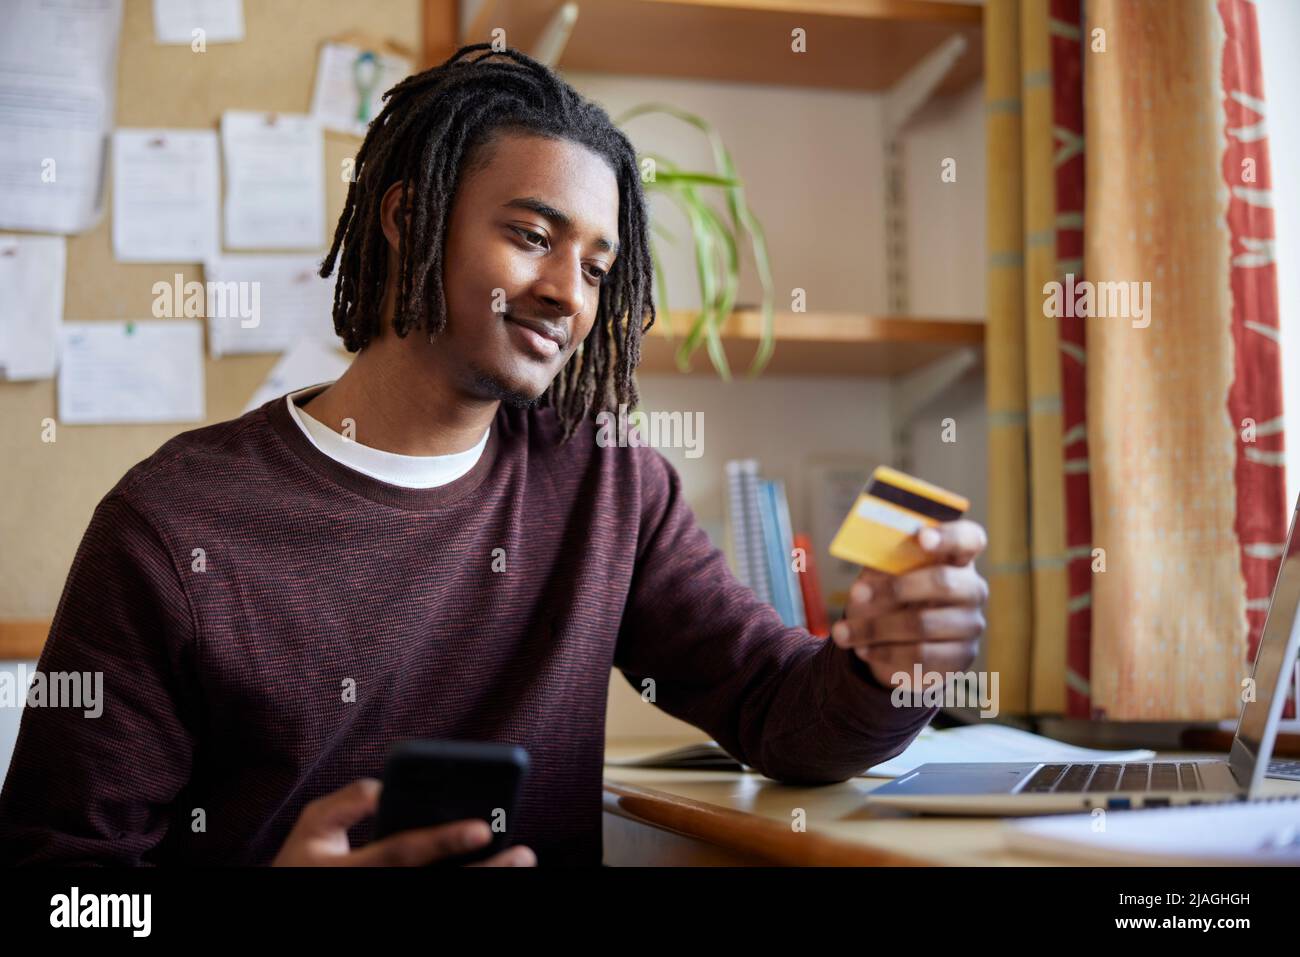 Männlicher Universitäts- oder Hochschulstudent mit Kreditkarte, die Online-Kauf am Schreibtisch im Zimmer macht Stockfoto